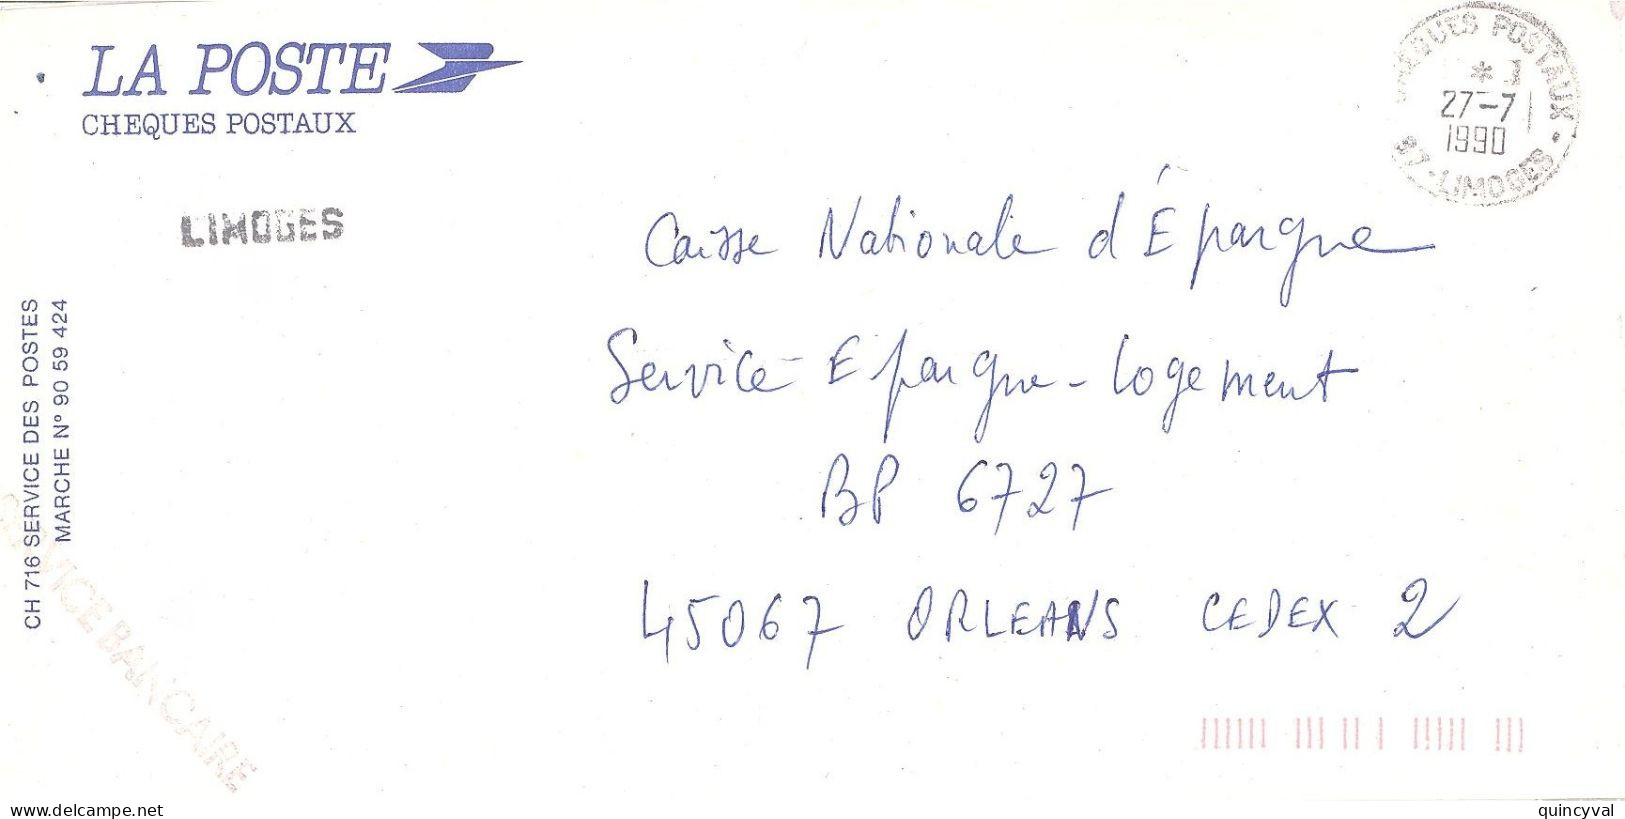 CHEQUES POSTAUX  87 LIMOGES Ob 27 7  1990 Lettre Enveloppe CCP Chèques Postaux  Service BANCAIRE - Handstempel